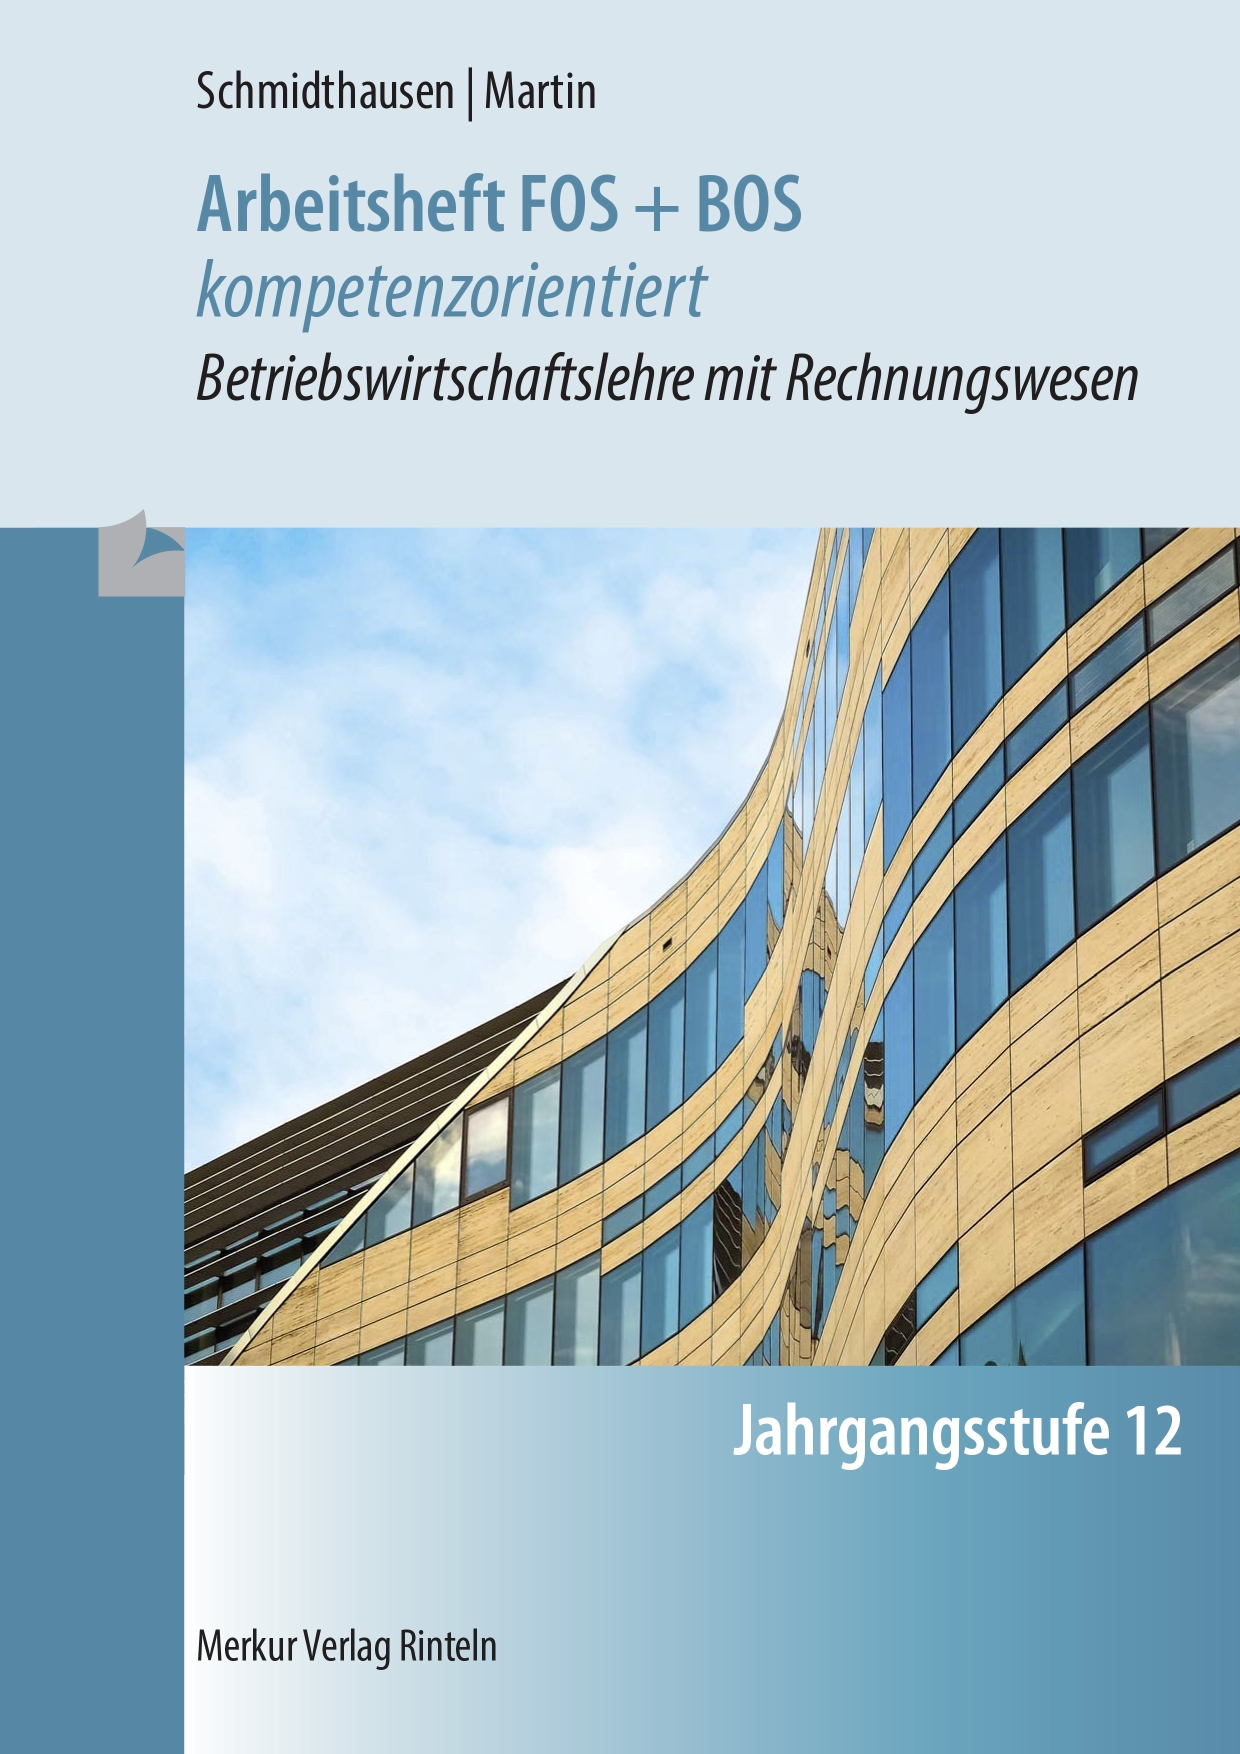 Arbeitsheft FOS + BOS kompetenzorientiert Betriebswirtschaft mit Rechnungswesen - Jgst. 12 (Bayern)